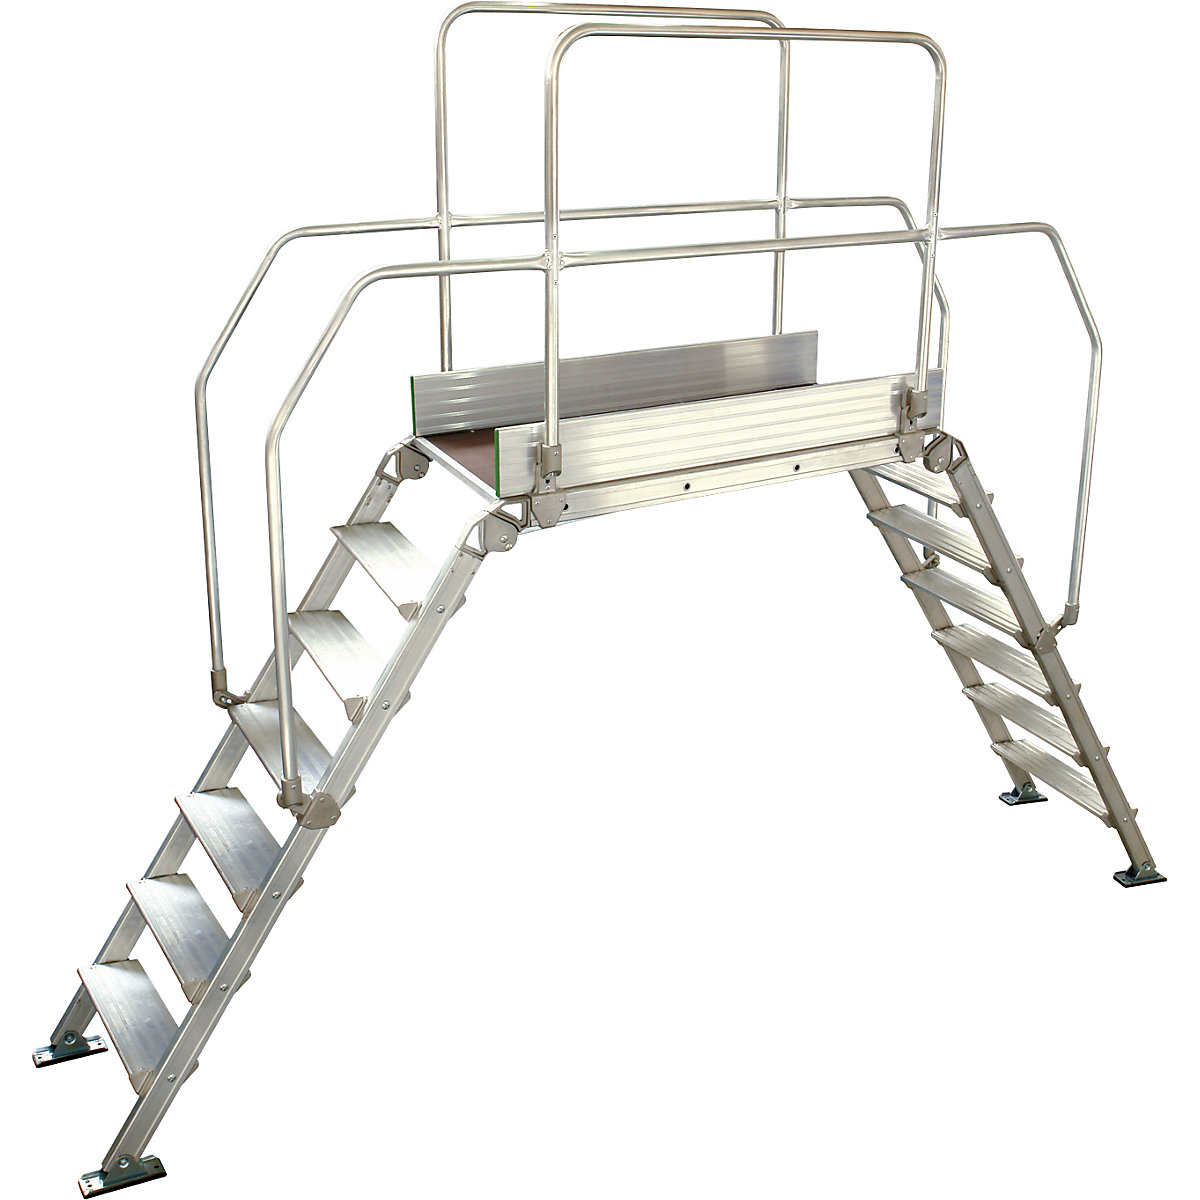 Aluminium ladderbrug, totale belasting 200 kg, 7 treden, platform 1200 x 530 mm-4